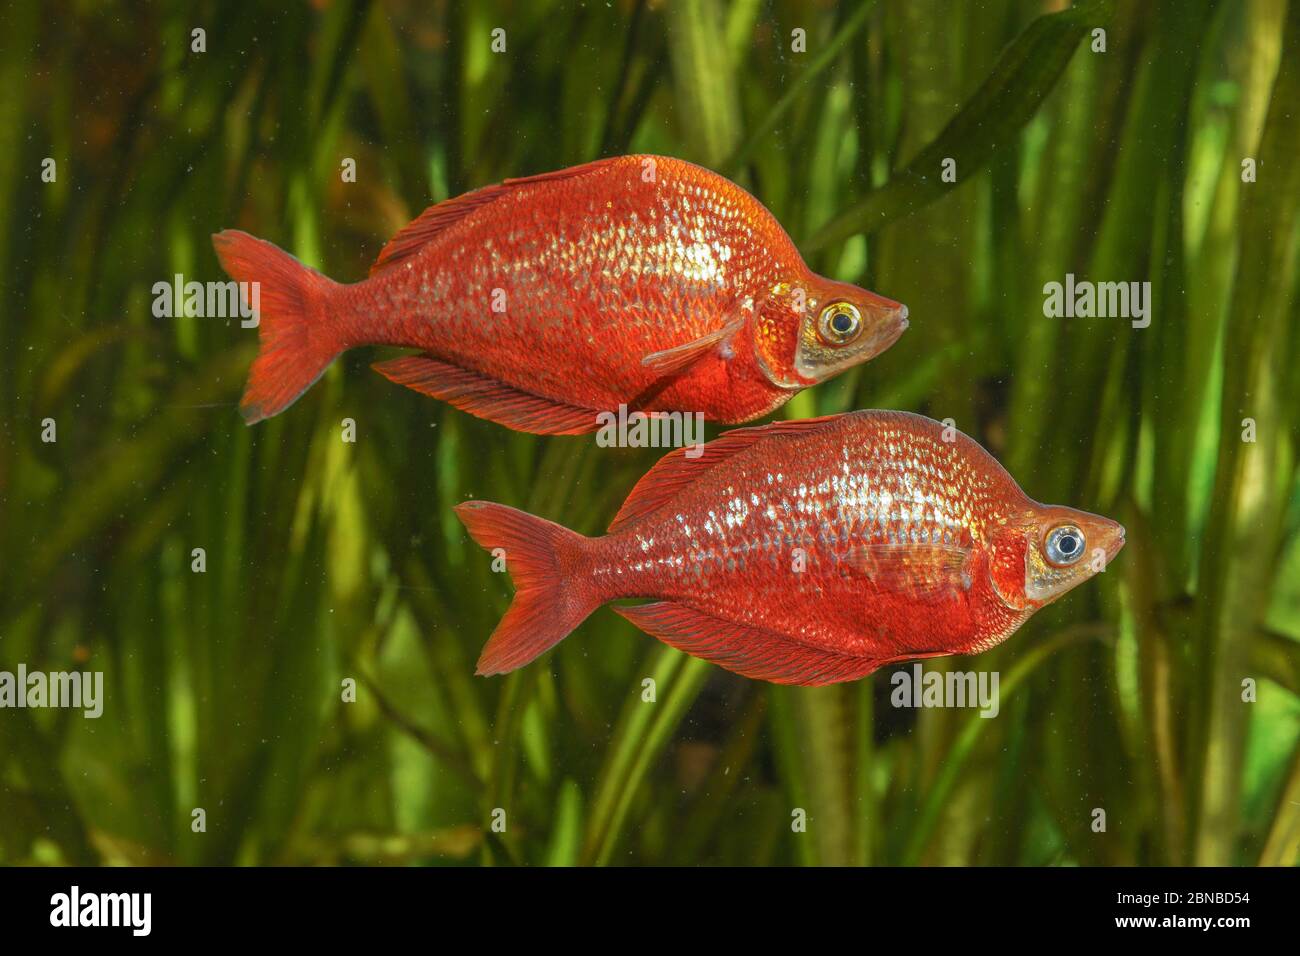 Pesce rosso arcobaleno, pesce rosso salmone, pesce rosso irriano della Nuova Guinea (Glossolepis incisus), con colorazione nuziale Foto Stock